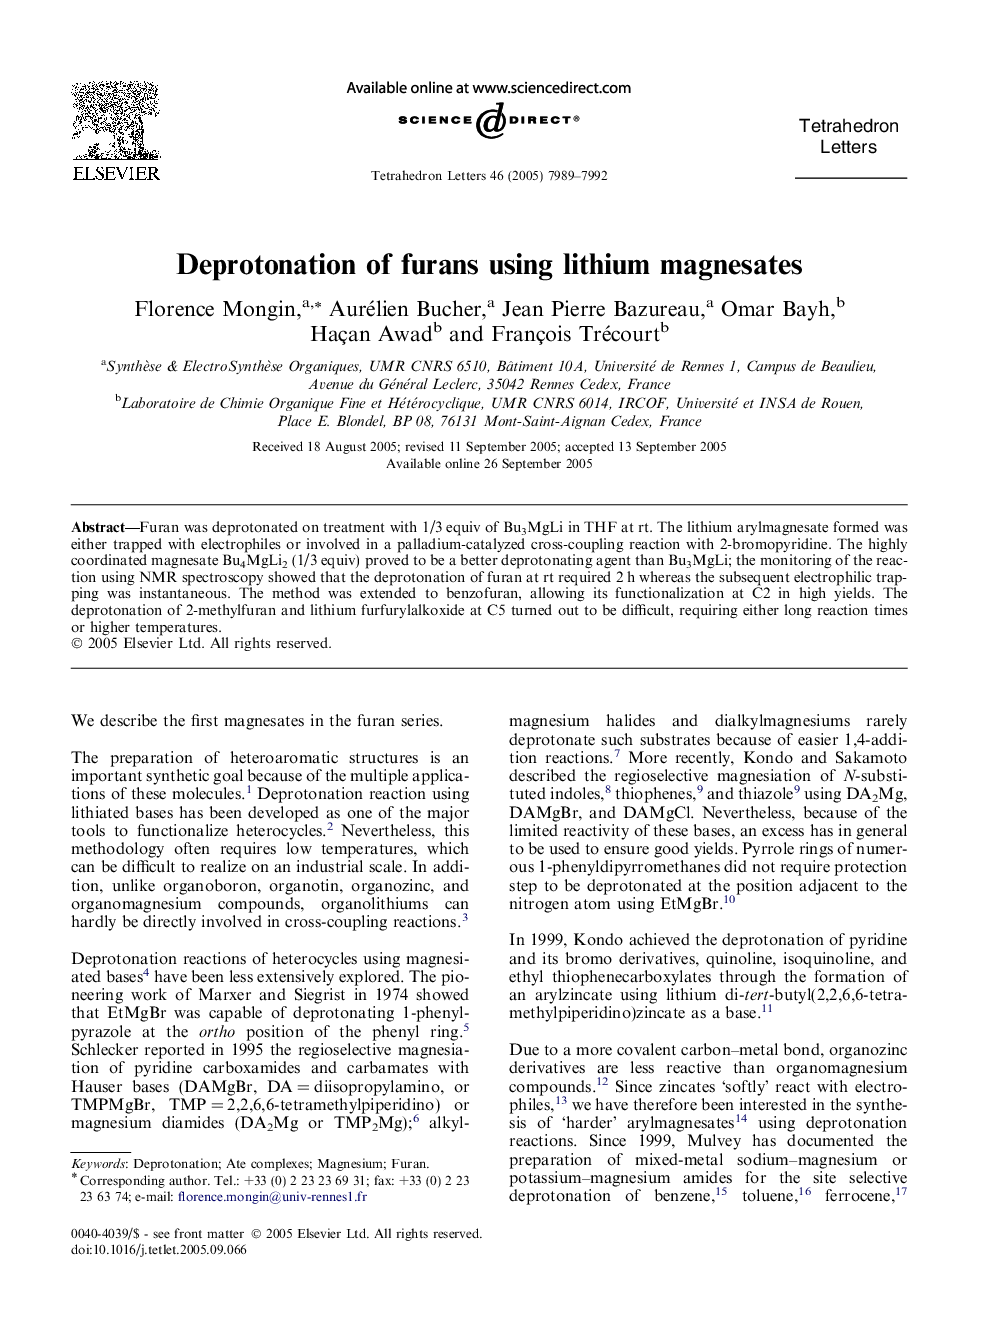 Deprotonation of furans using lithium magnesates